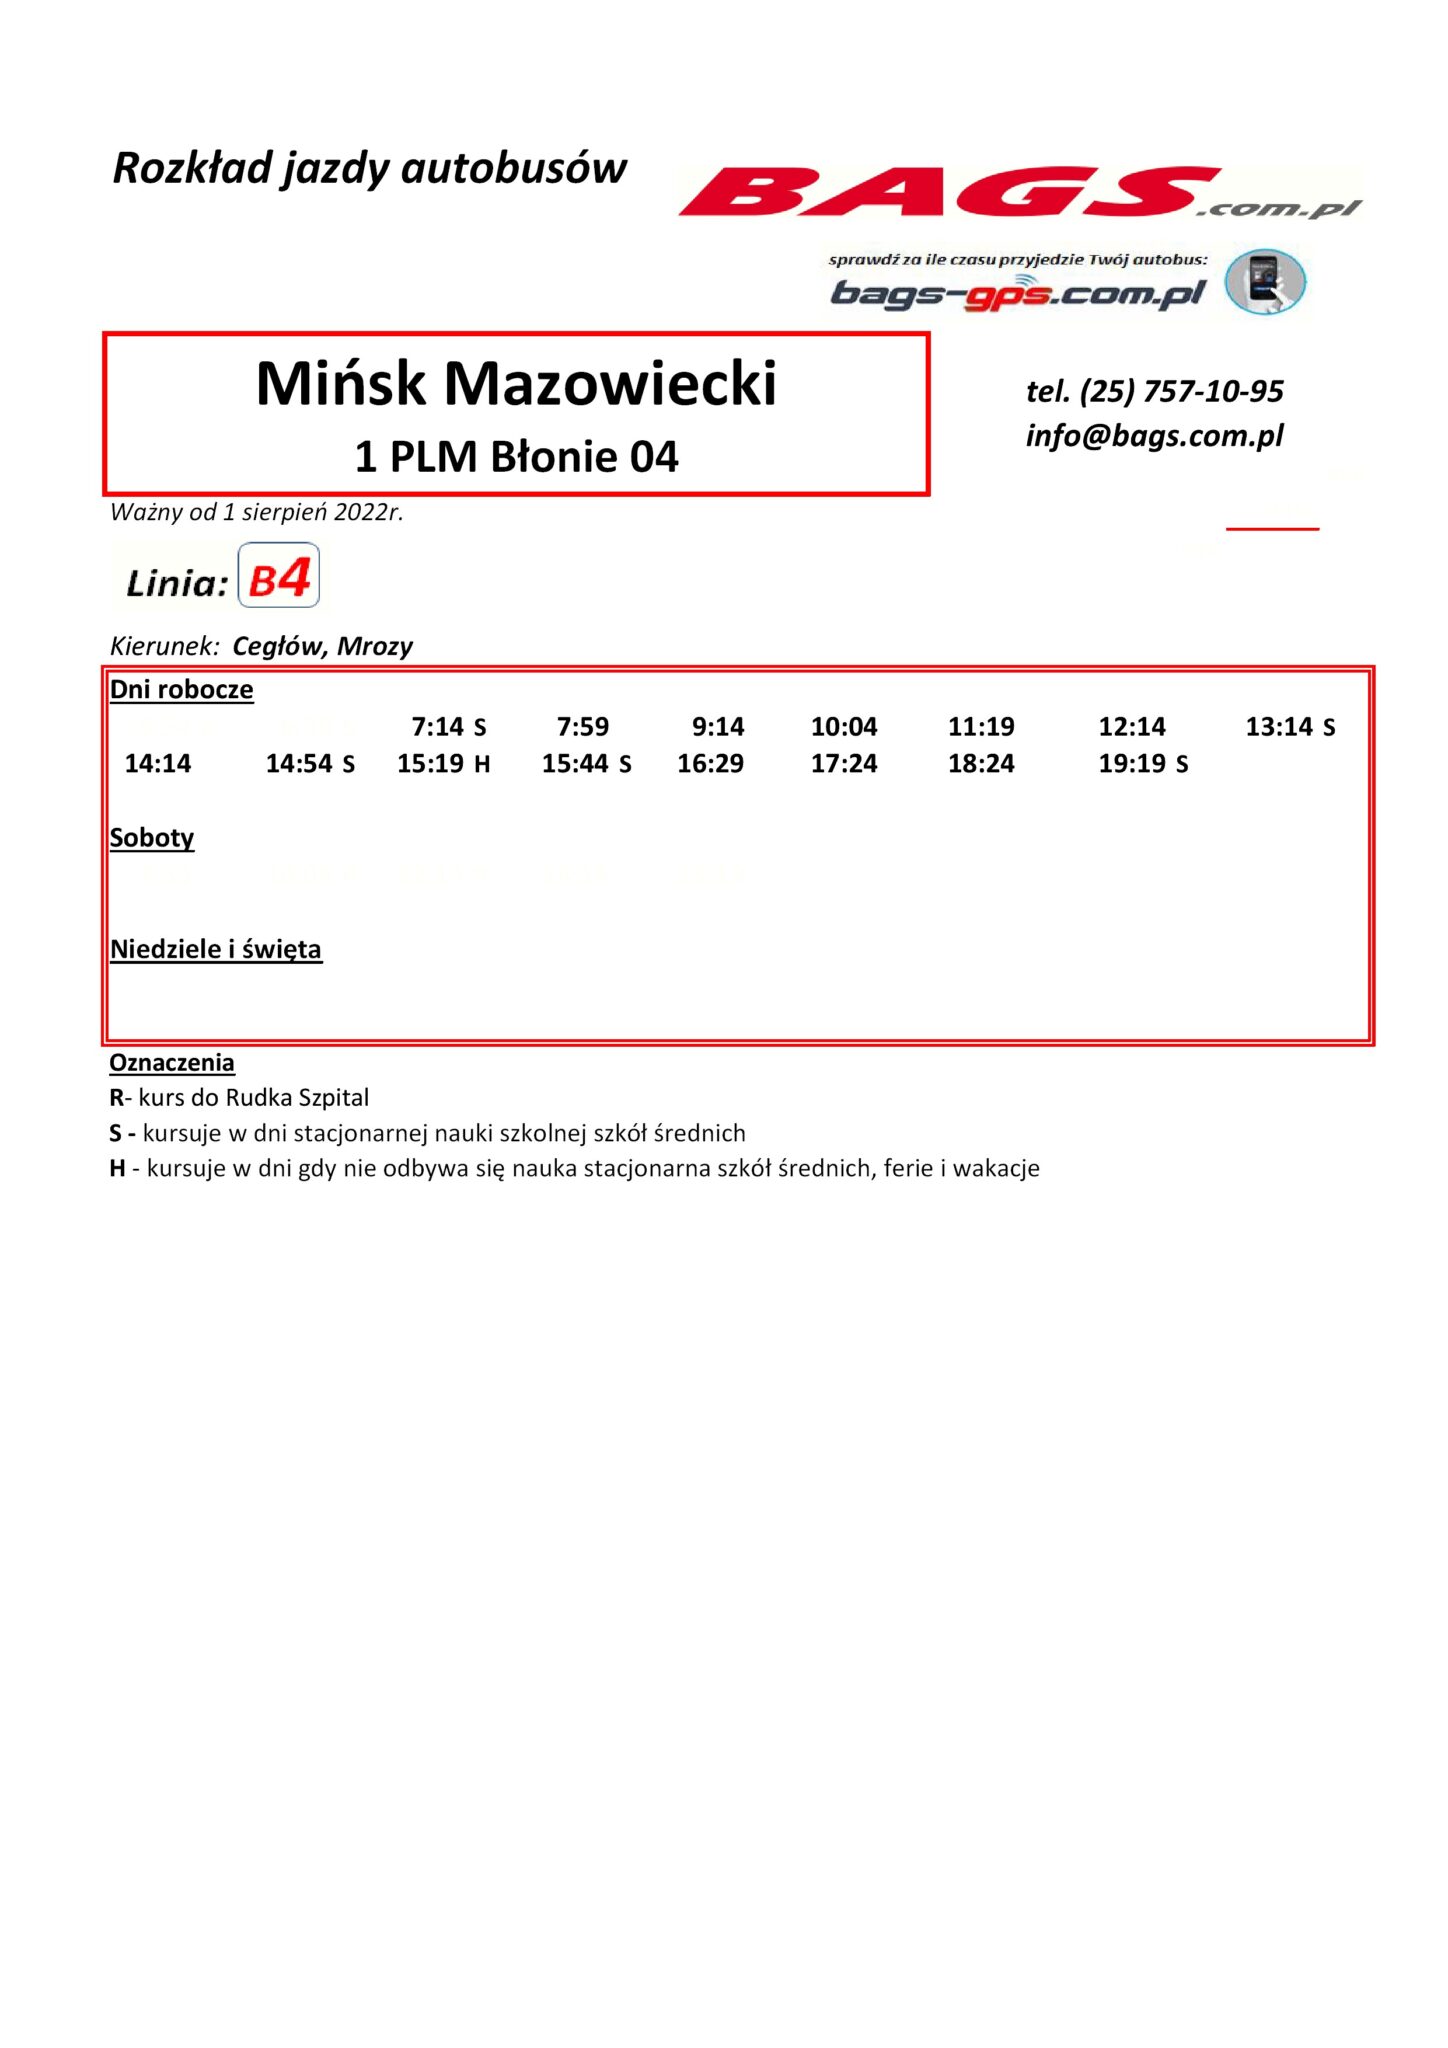 Minsk-Maz.-Blonie-04-1-1-1448x2048 (1)